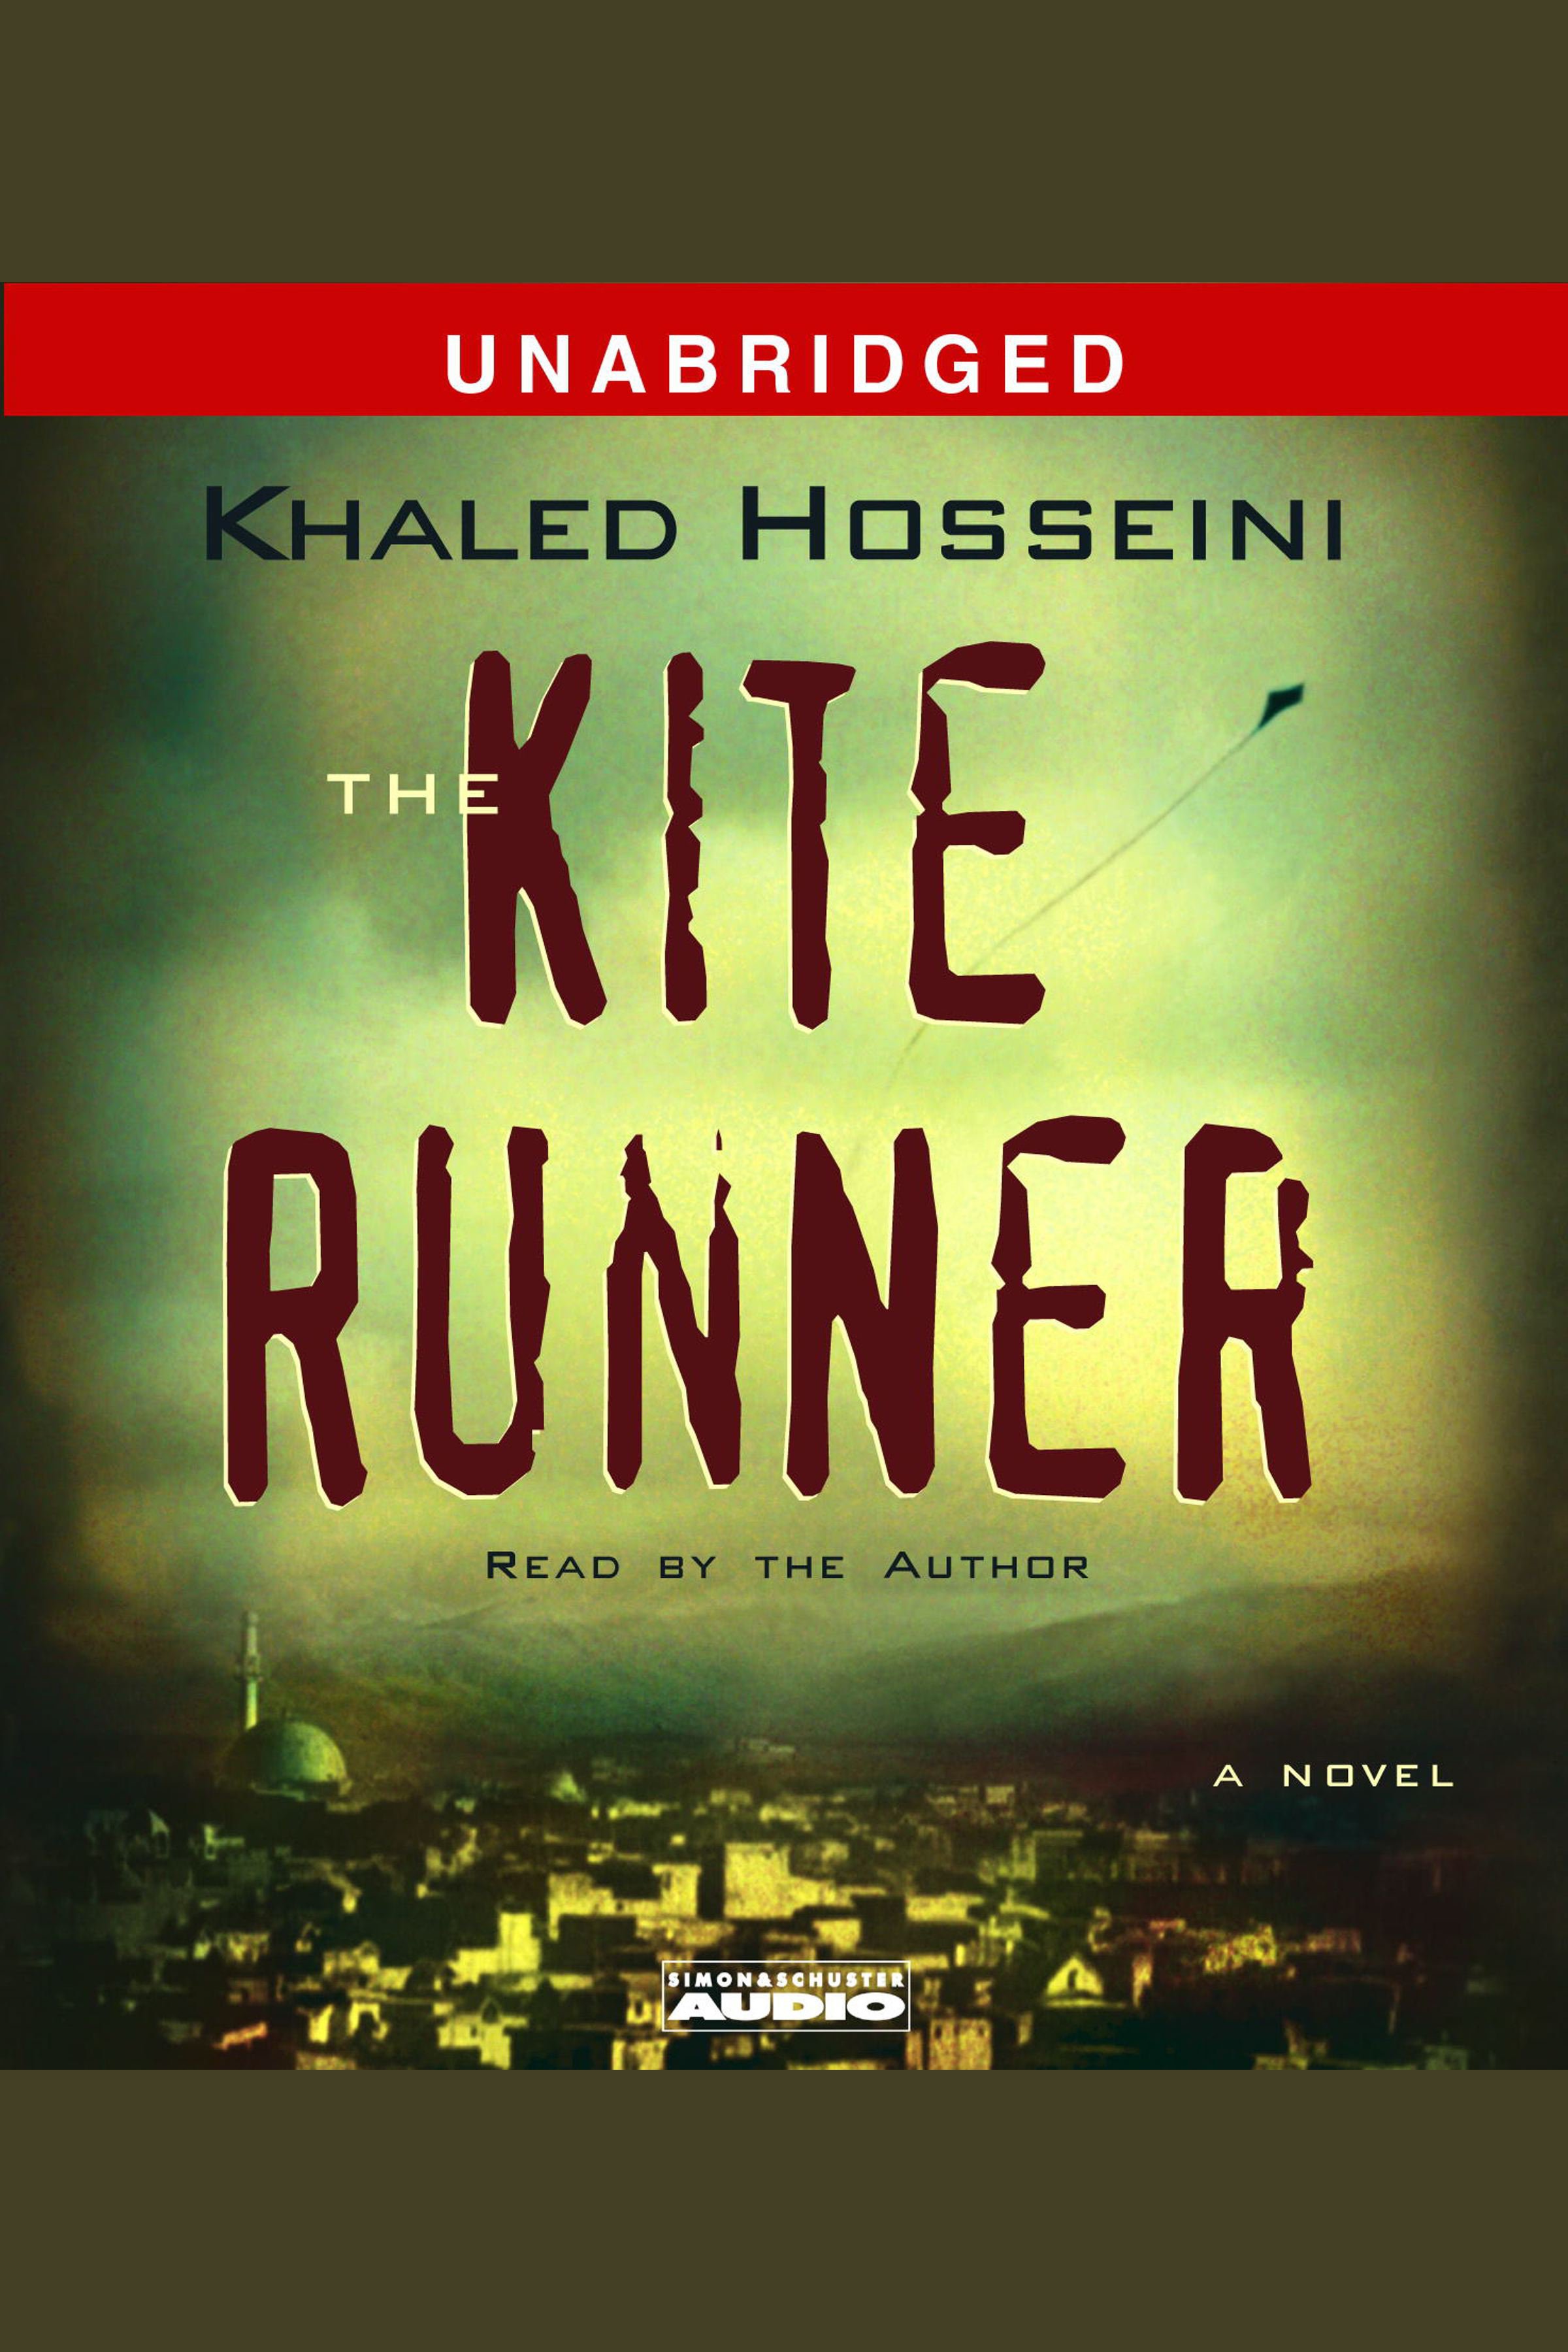 The kite runner cover image